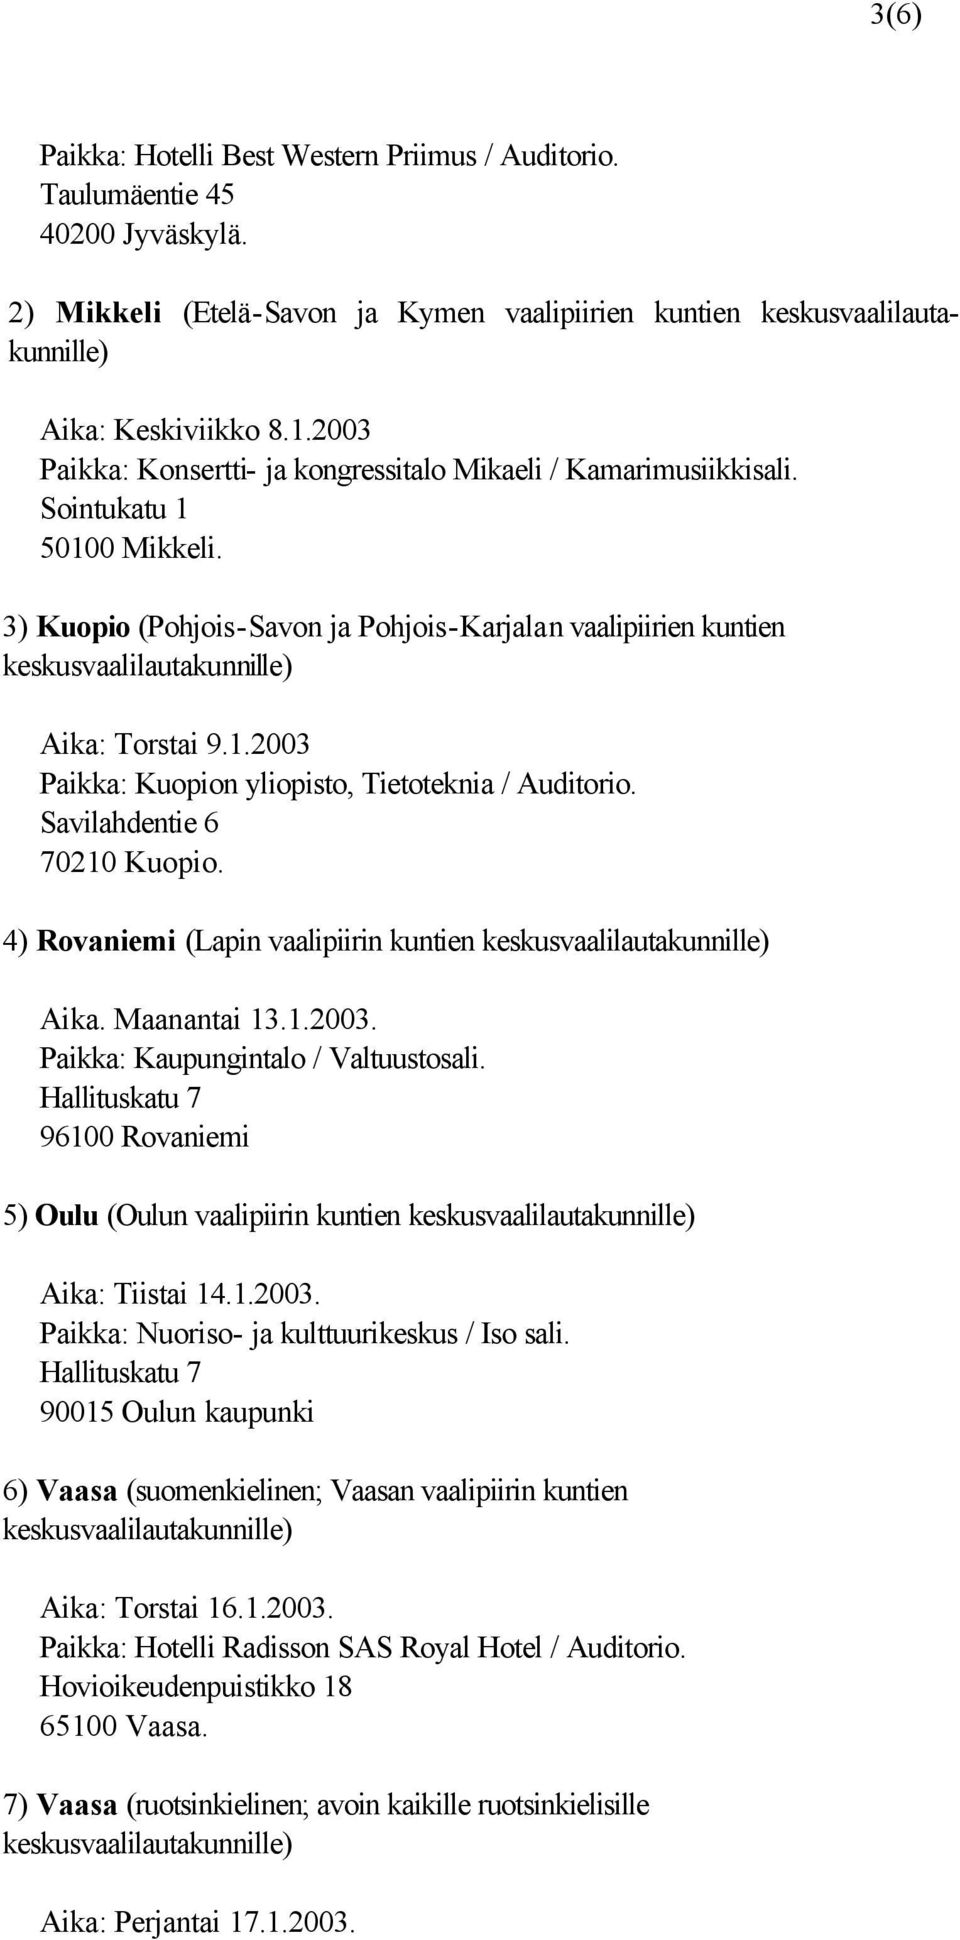 3) Kuopio (Pohjois-Savon ja Pohjois-Karjalan vaalipiirien kuntien keskusvaalilautakunnille) Aika: Torstai 9.1.2003 Paikka: Kuopion yliopisto, Tietoteknia / Auditorio. Savilahdentie 6 70210 Kuopio.